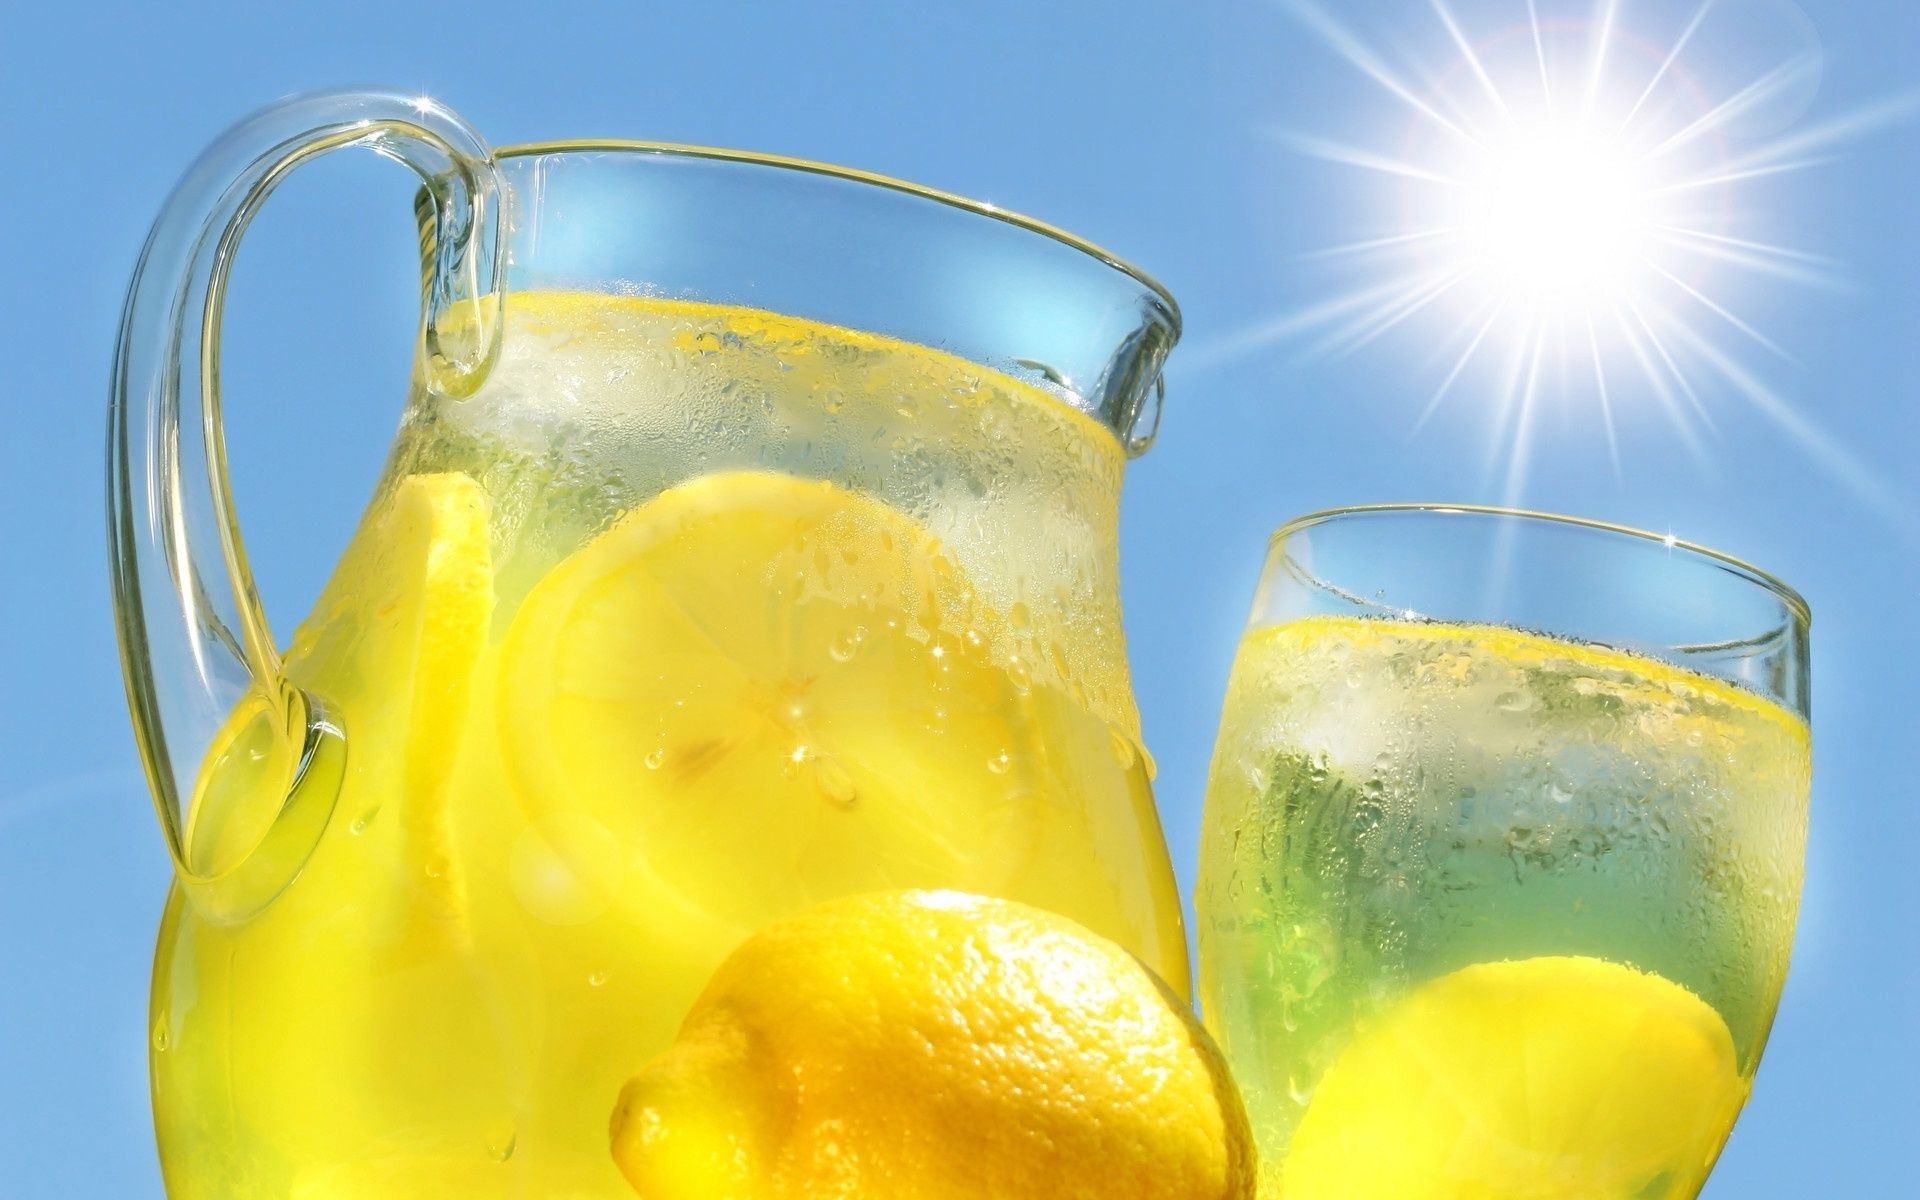 напитки стекло пить сок жидкость освежение фрукты холодная лимон мокрый лимонад цитрусовые сладкий пузырь круто свежесть тропический сочные жажда здоровый